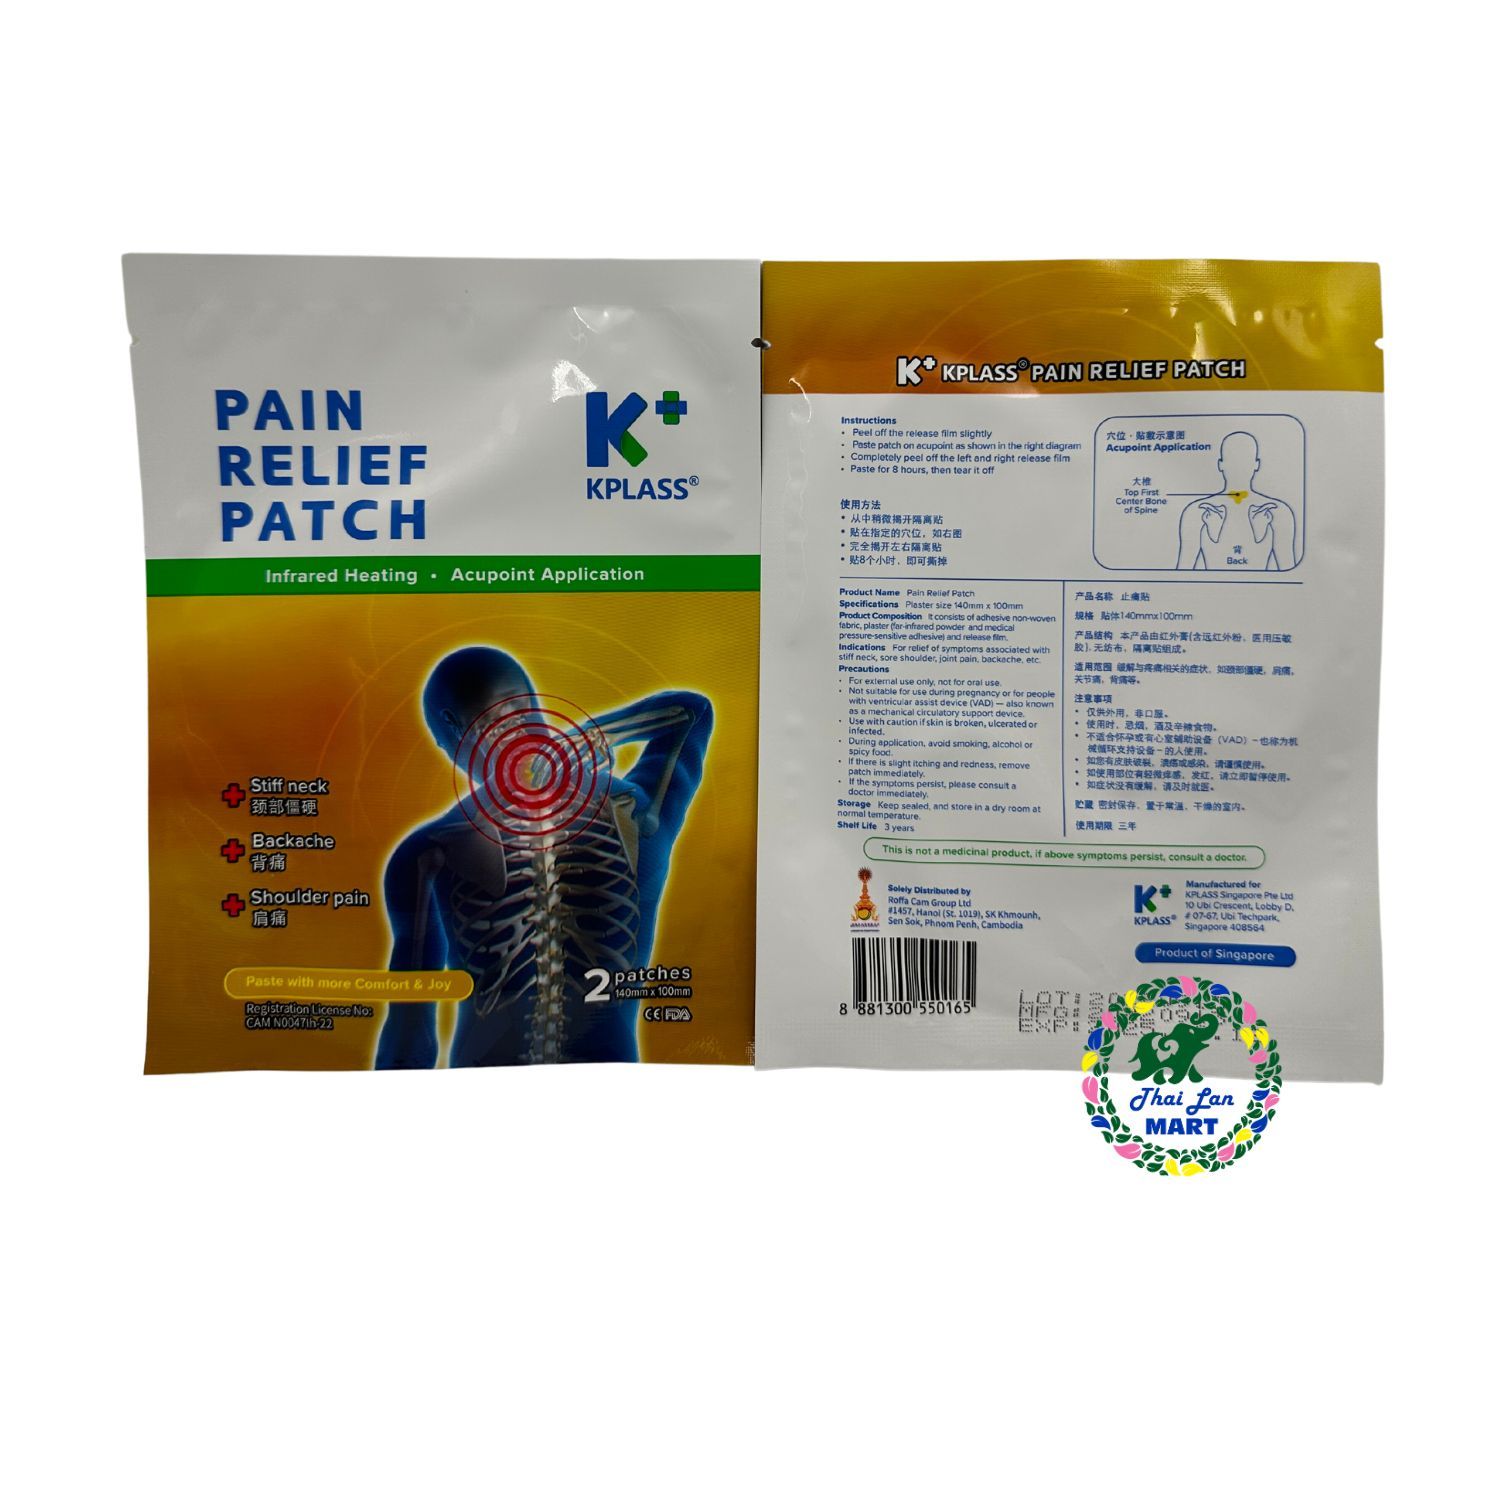  Cao dán kplass knee pain cought relief patch giảm ho đau cổ đau đầu gối hàng chính hãng singapore 